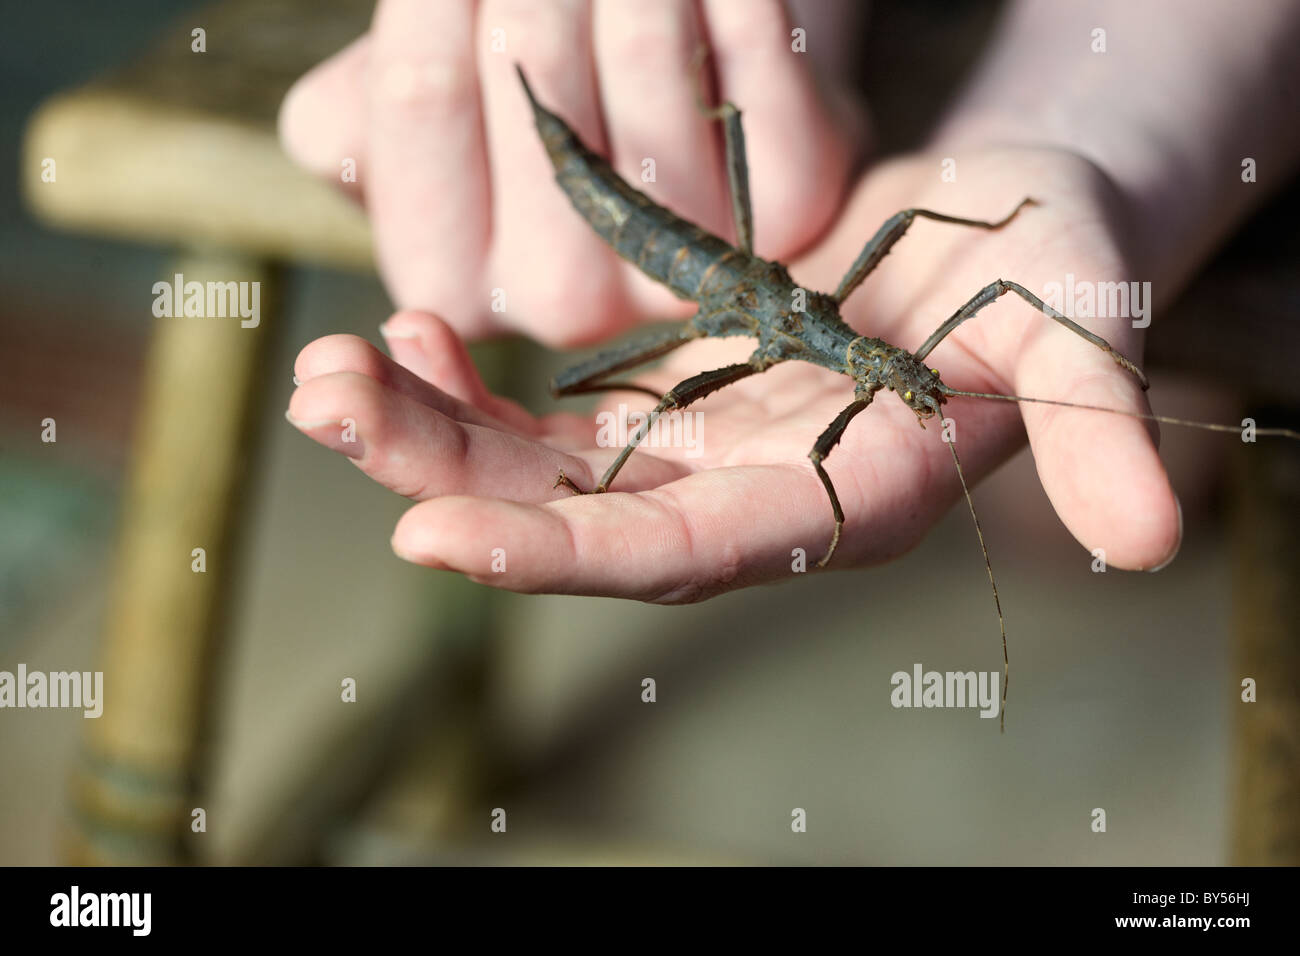 Trachyaretaon Bruekneri, Giant spinosa Stick insetto, tenuto come un animale, con il giovane proprietario. Foto Stock